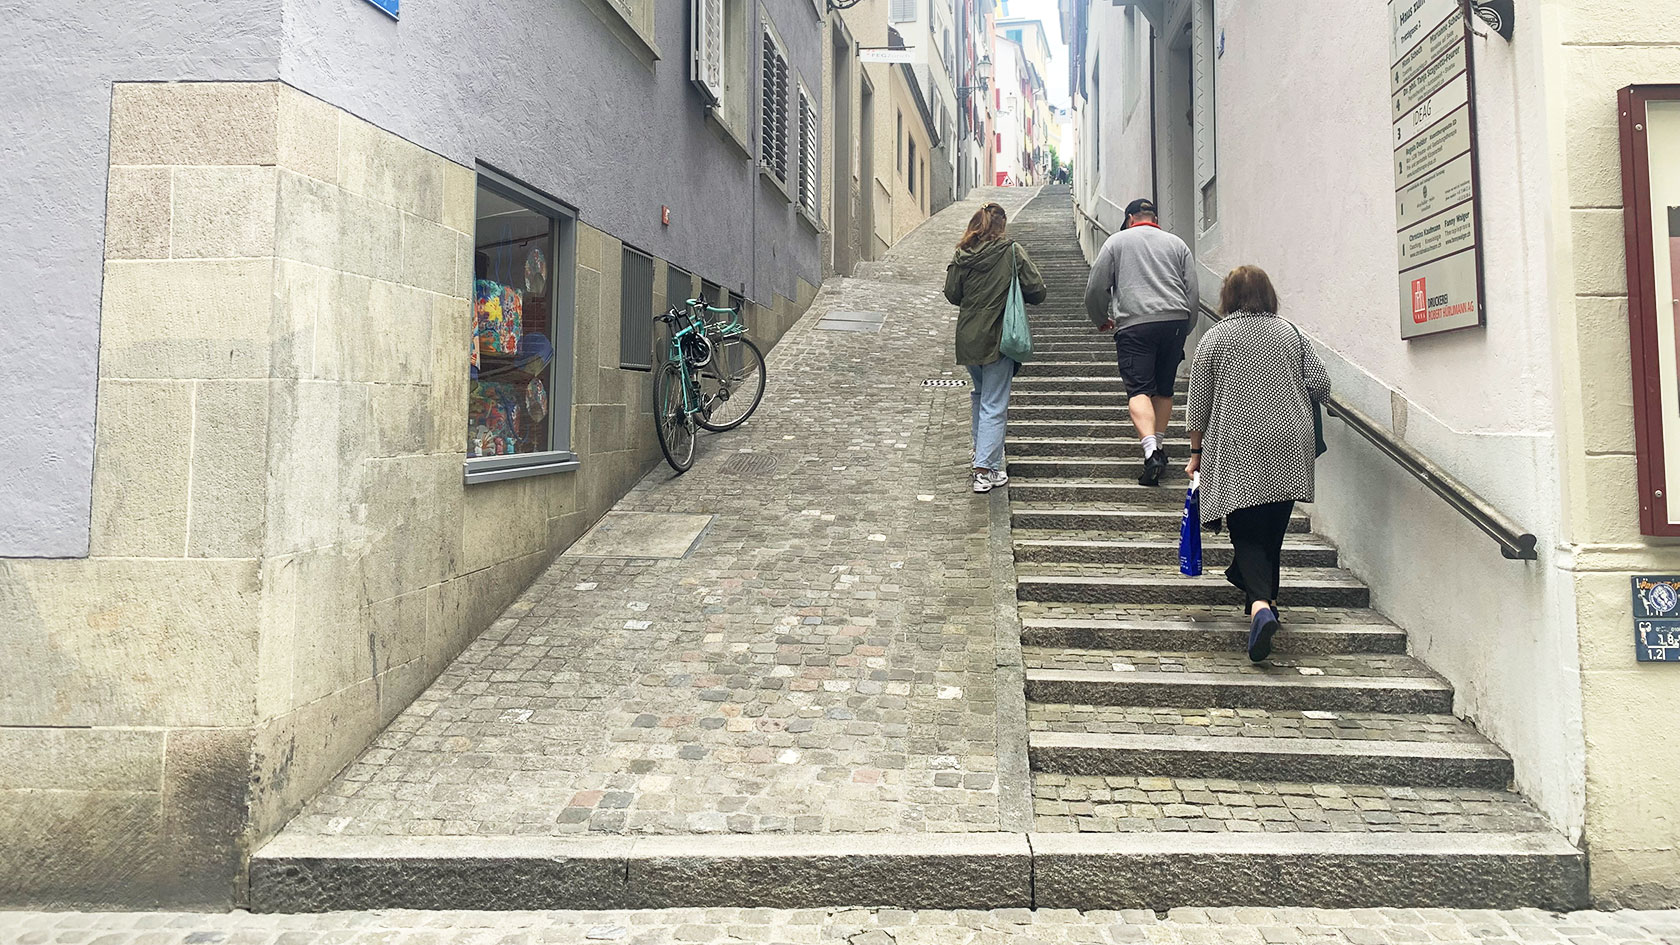 Die Trittligasse in Zürich: Trotz Rampe steht der Randstein der Barrierefreiheit im Weg.